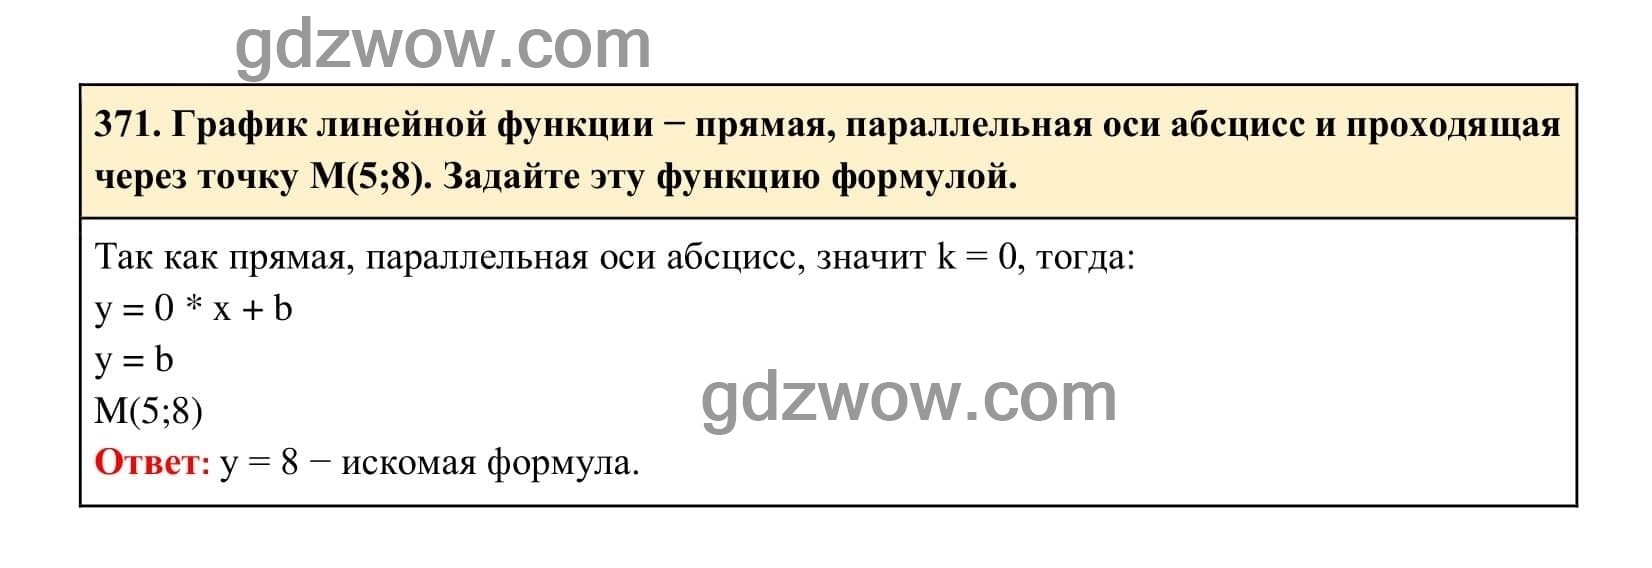 Упражнение 371 - ГДЗ по Алгебре 7 класс Учебник Макарычев (решебник) - GDZwow